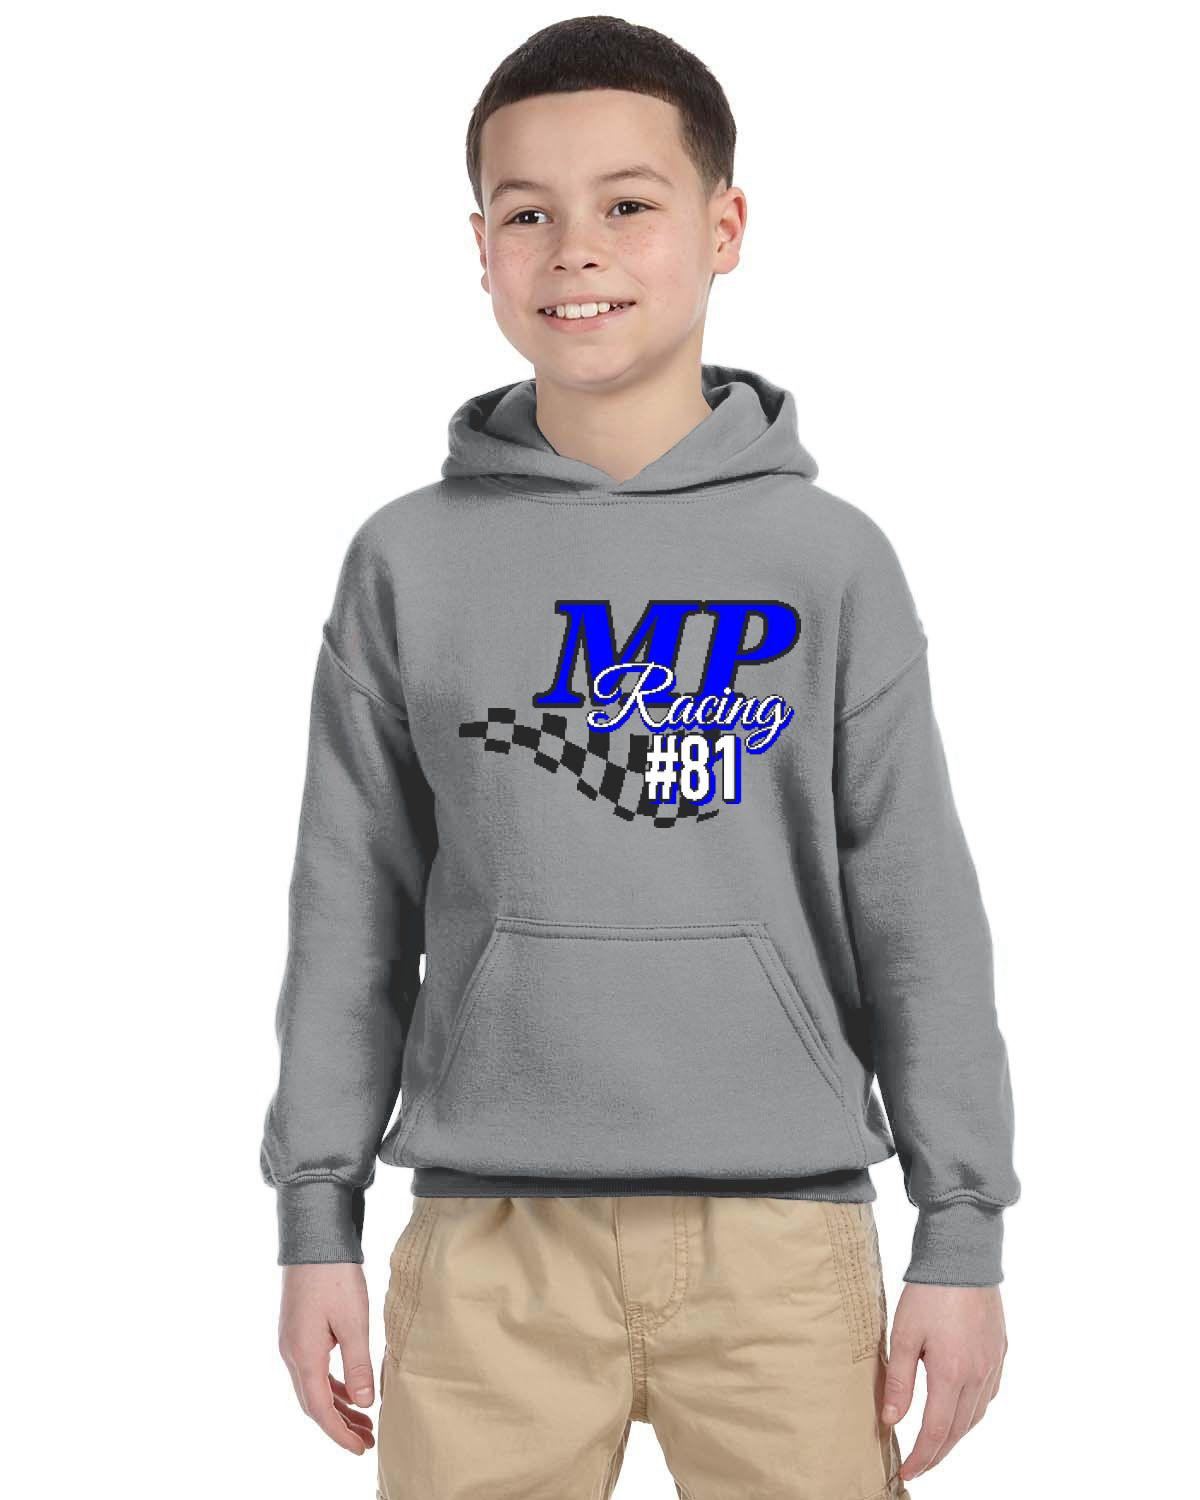 MP Racing Kid's Hoodie